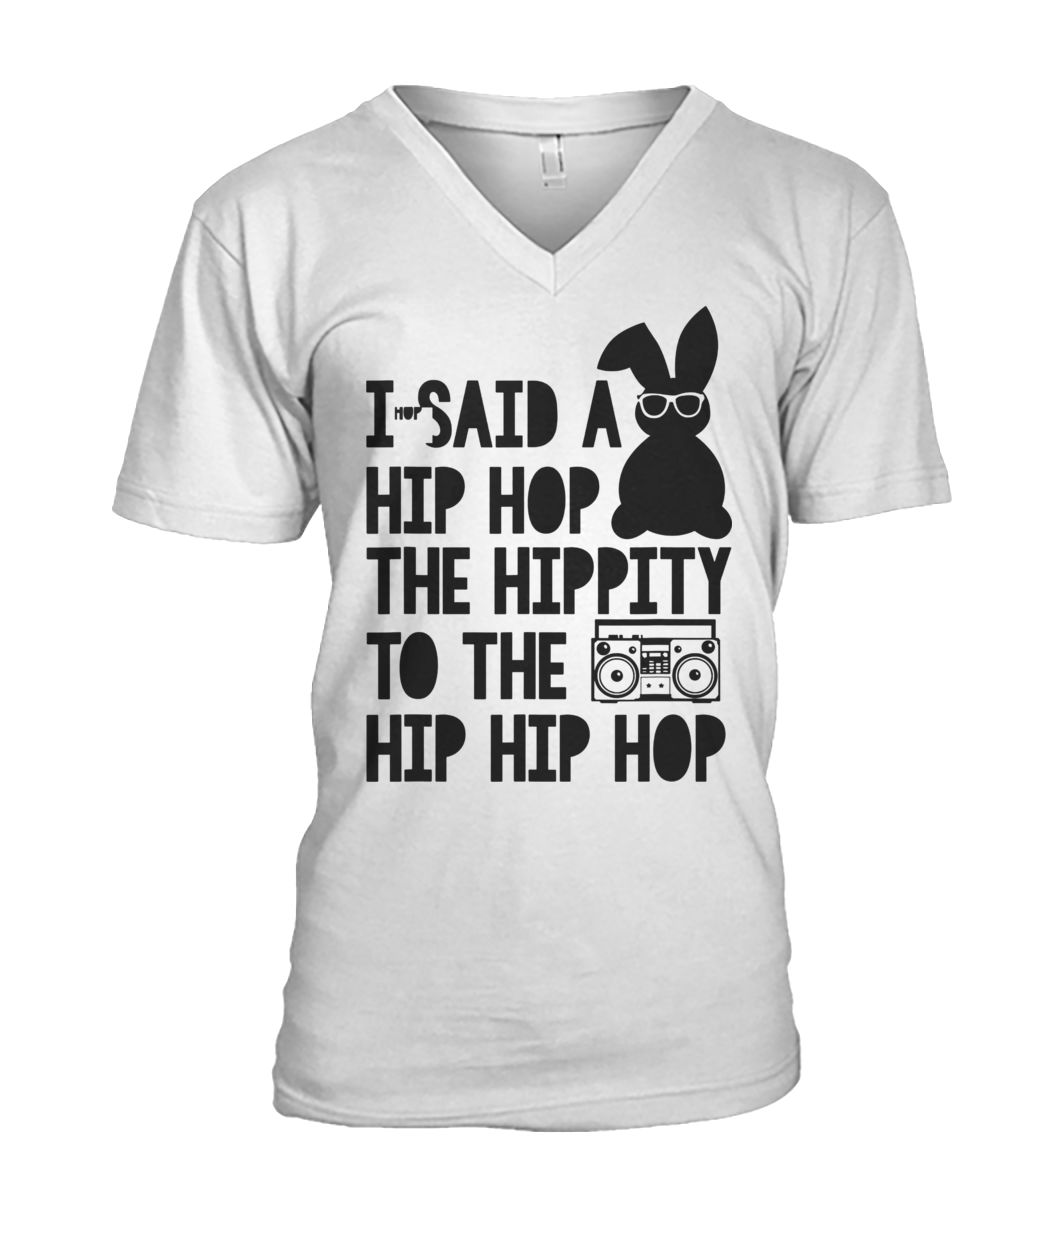 Easter bunny I said a hip-hop hippity to the hip hip hop mens v-neck